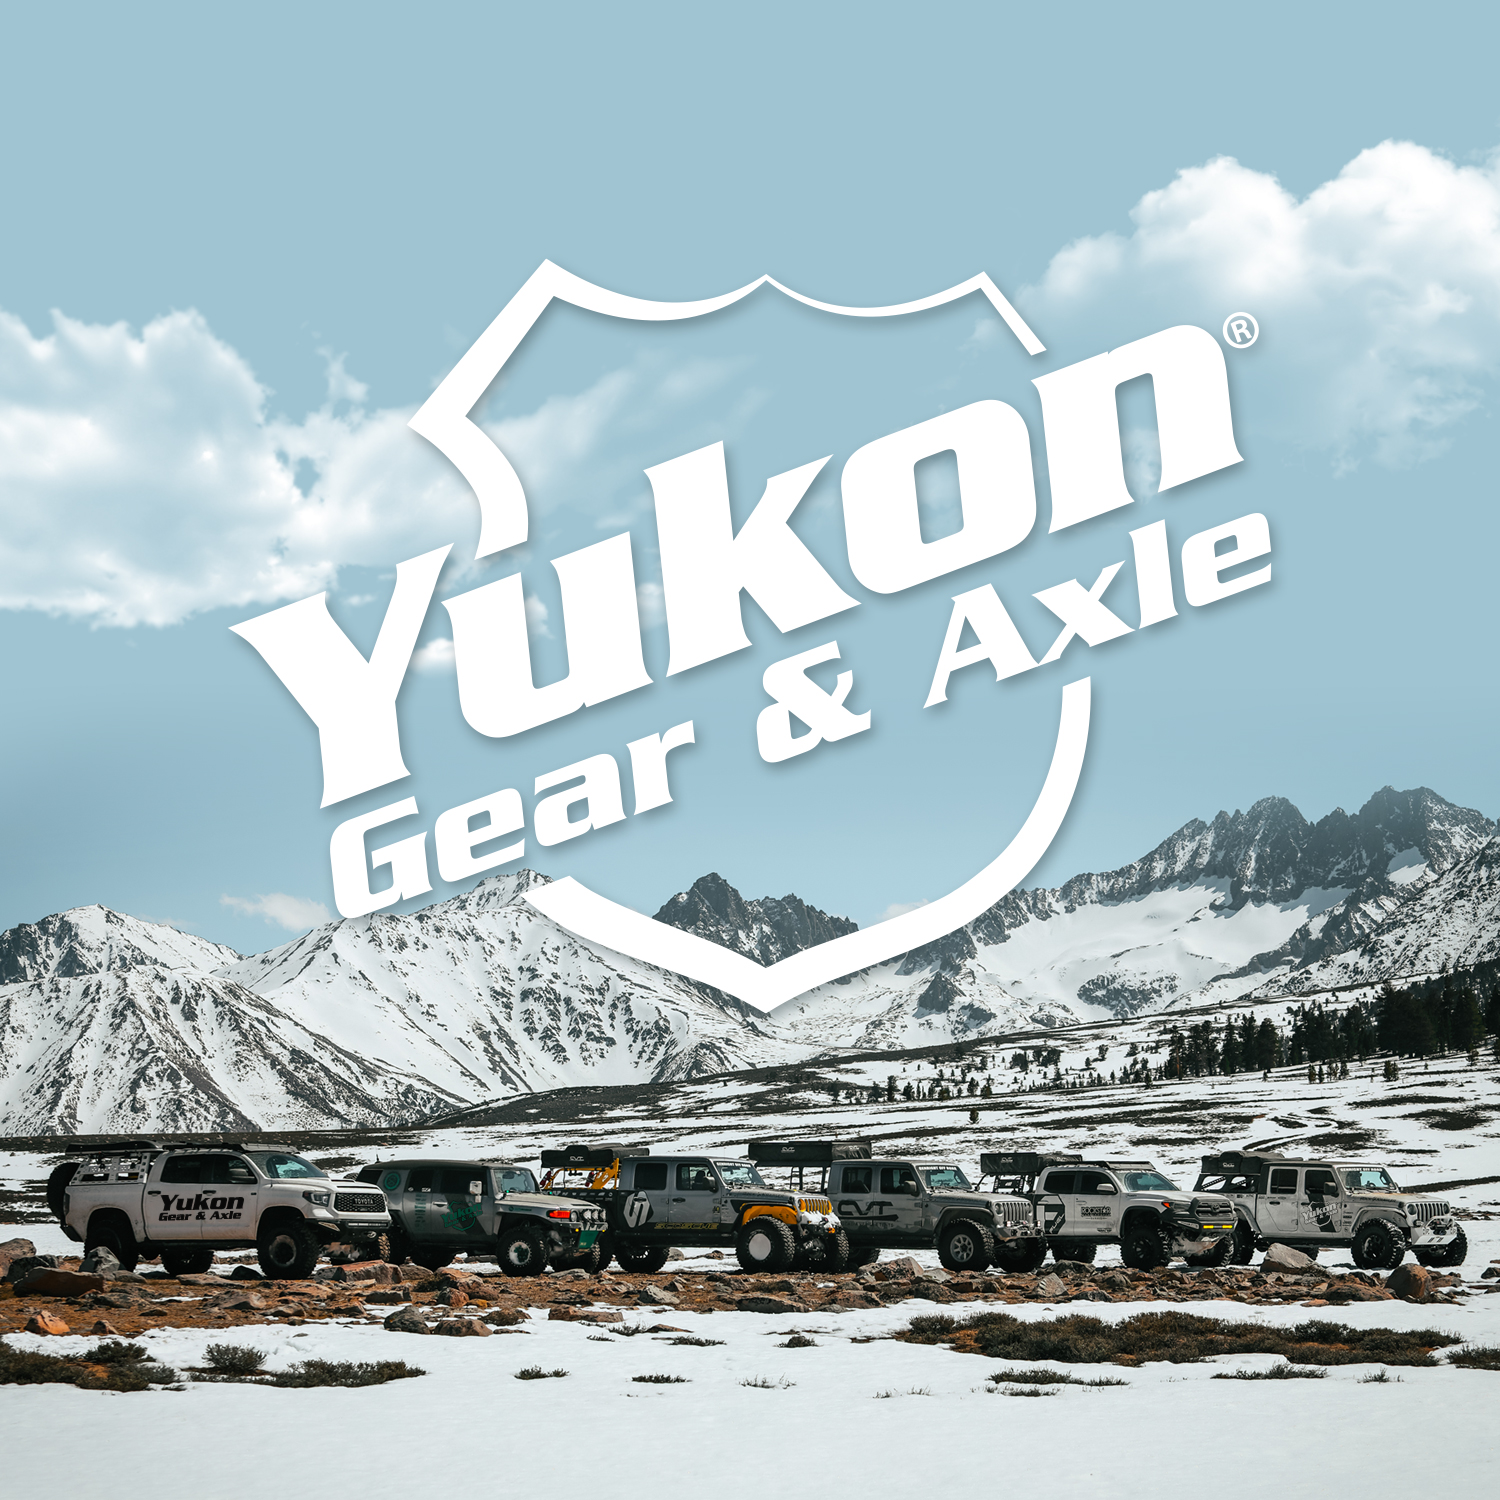 Yukon high performance Ring & Pinion set, Chrylser 8.75", 42 housing, 3.55 